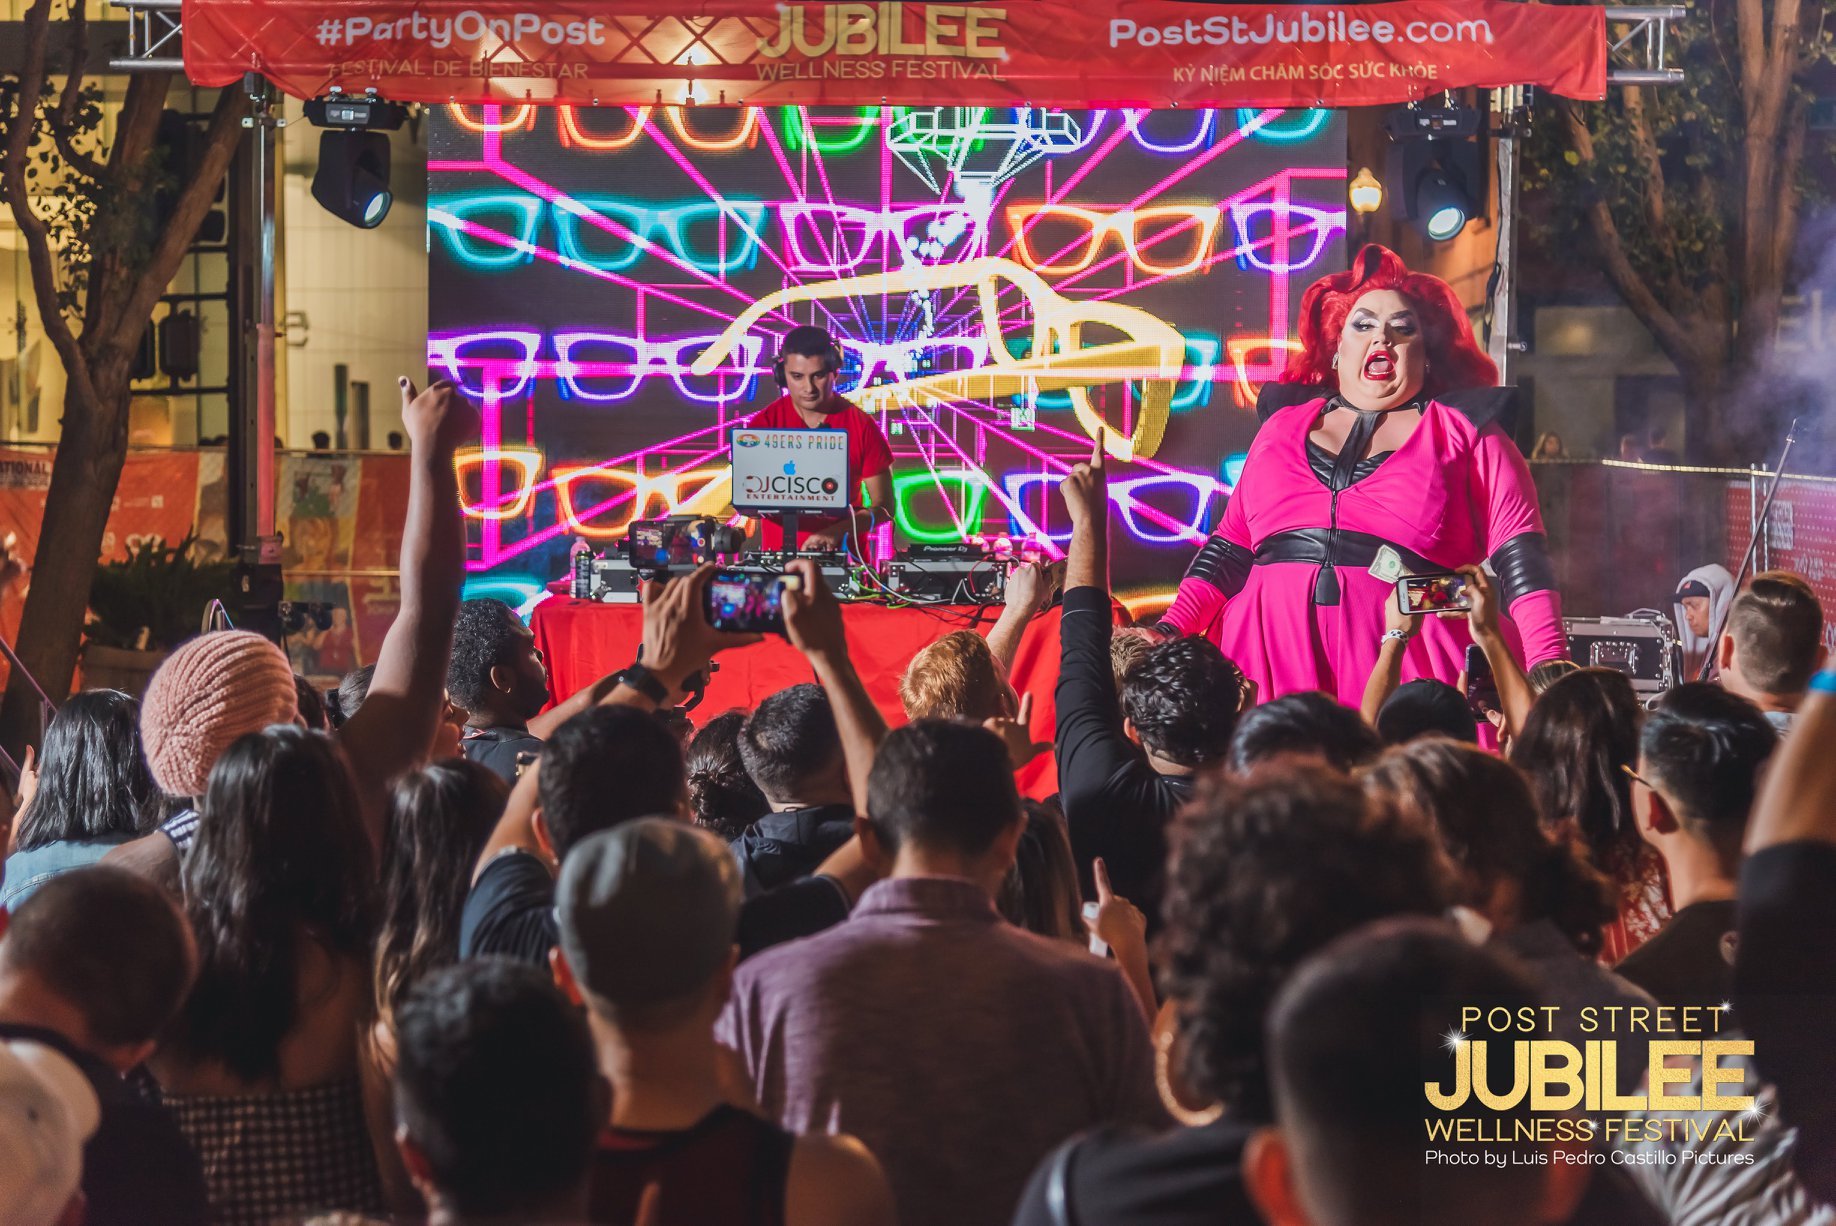 crowds cheer on Eureka O'hara at Jubilee Wellness Festival